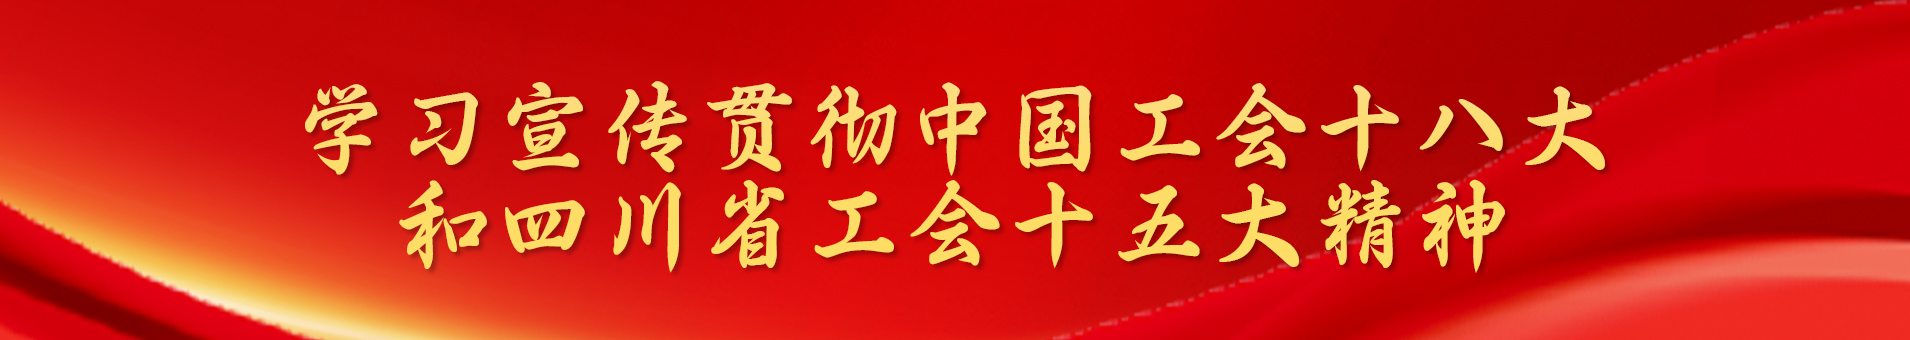 学习宣传贯彻中国工会十八大和四川省工会十五大精神